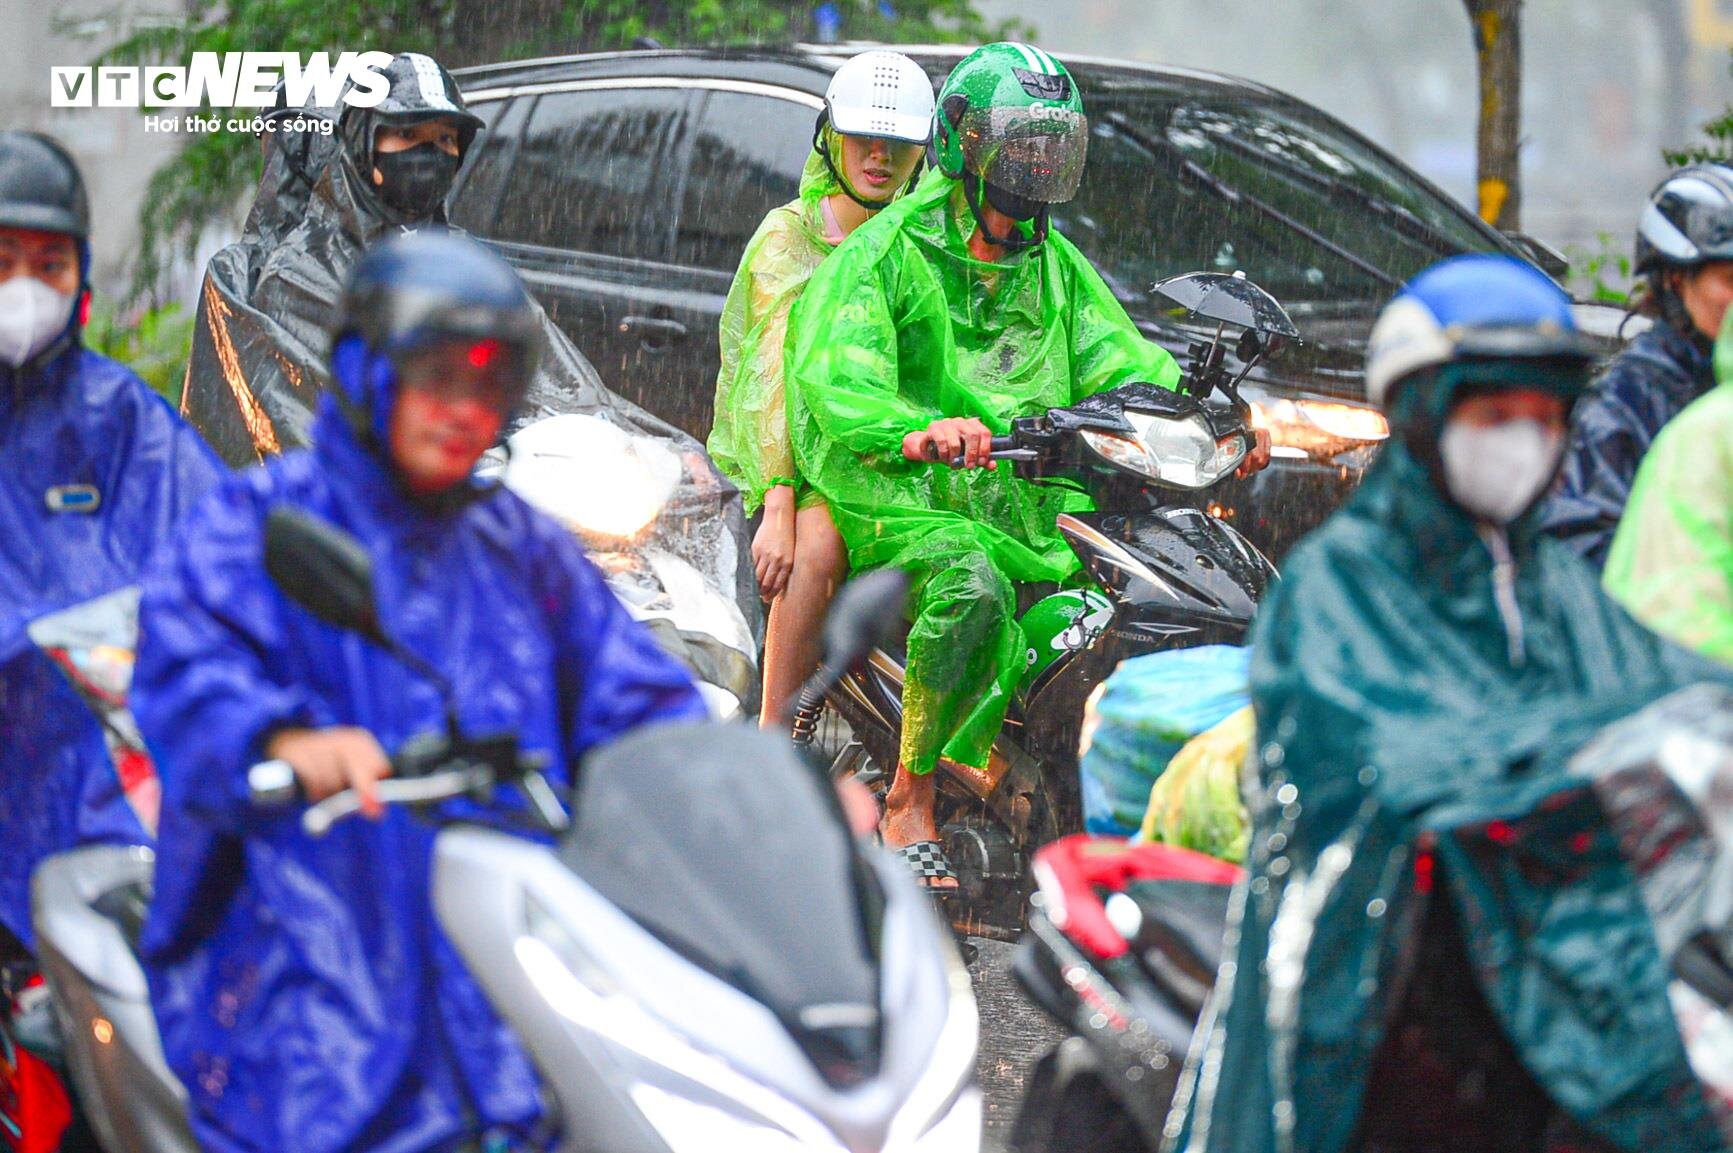 Giao thông Hà Nội hỗn loạn trong cơn mưa như trút nước - 5